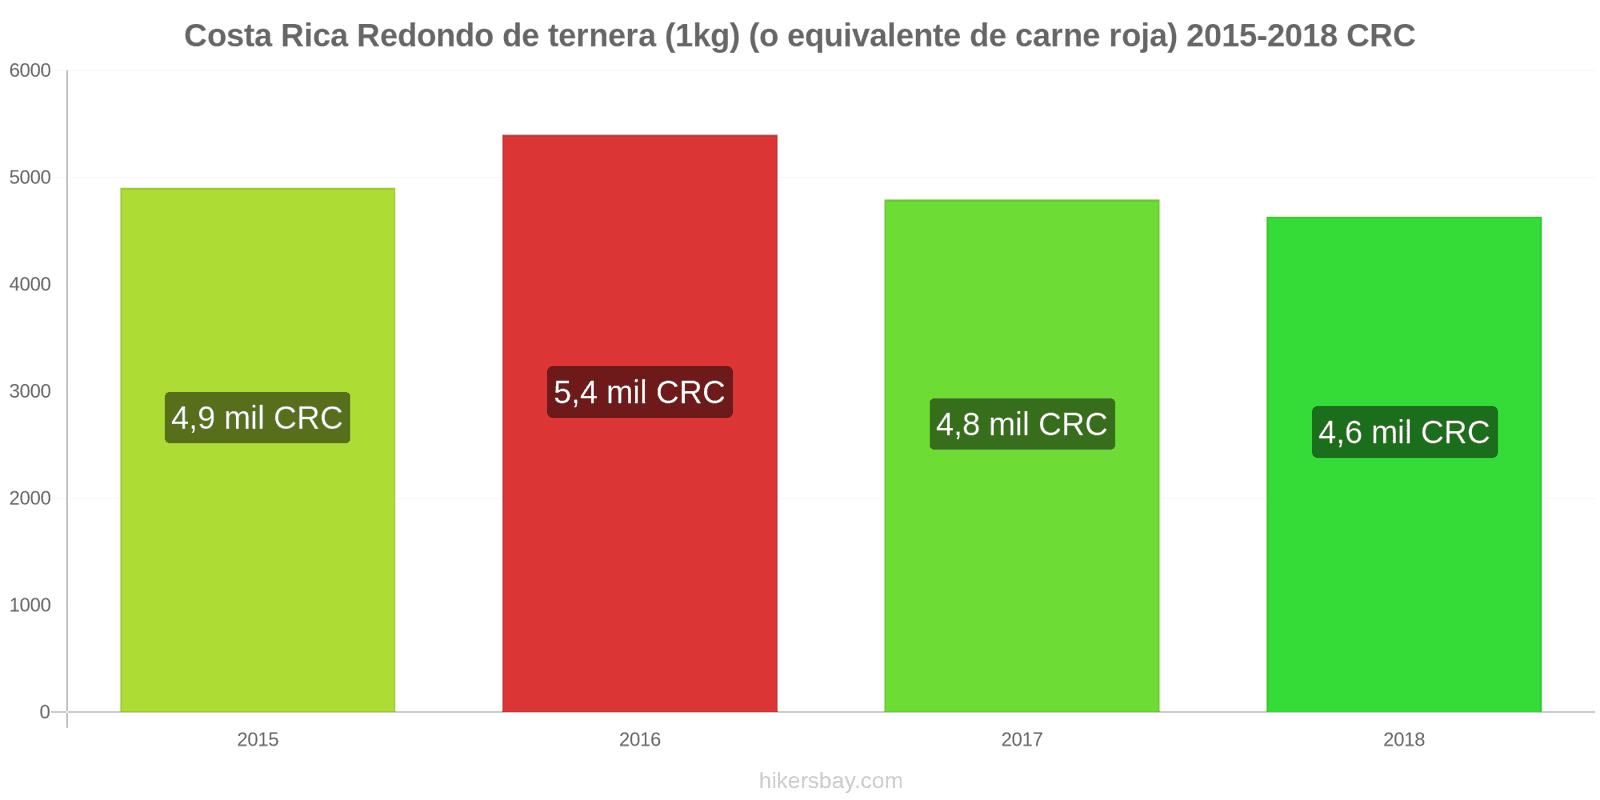 Costa Rica cambios de precios Carne de res (1kg) (o carne roja similar) hikersbay.com